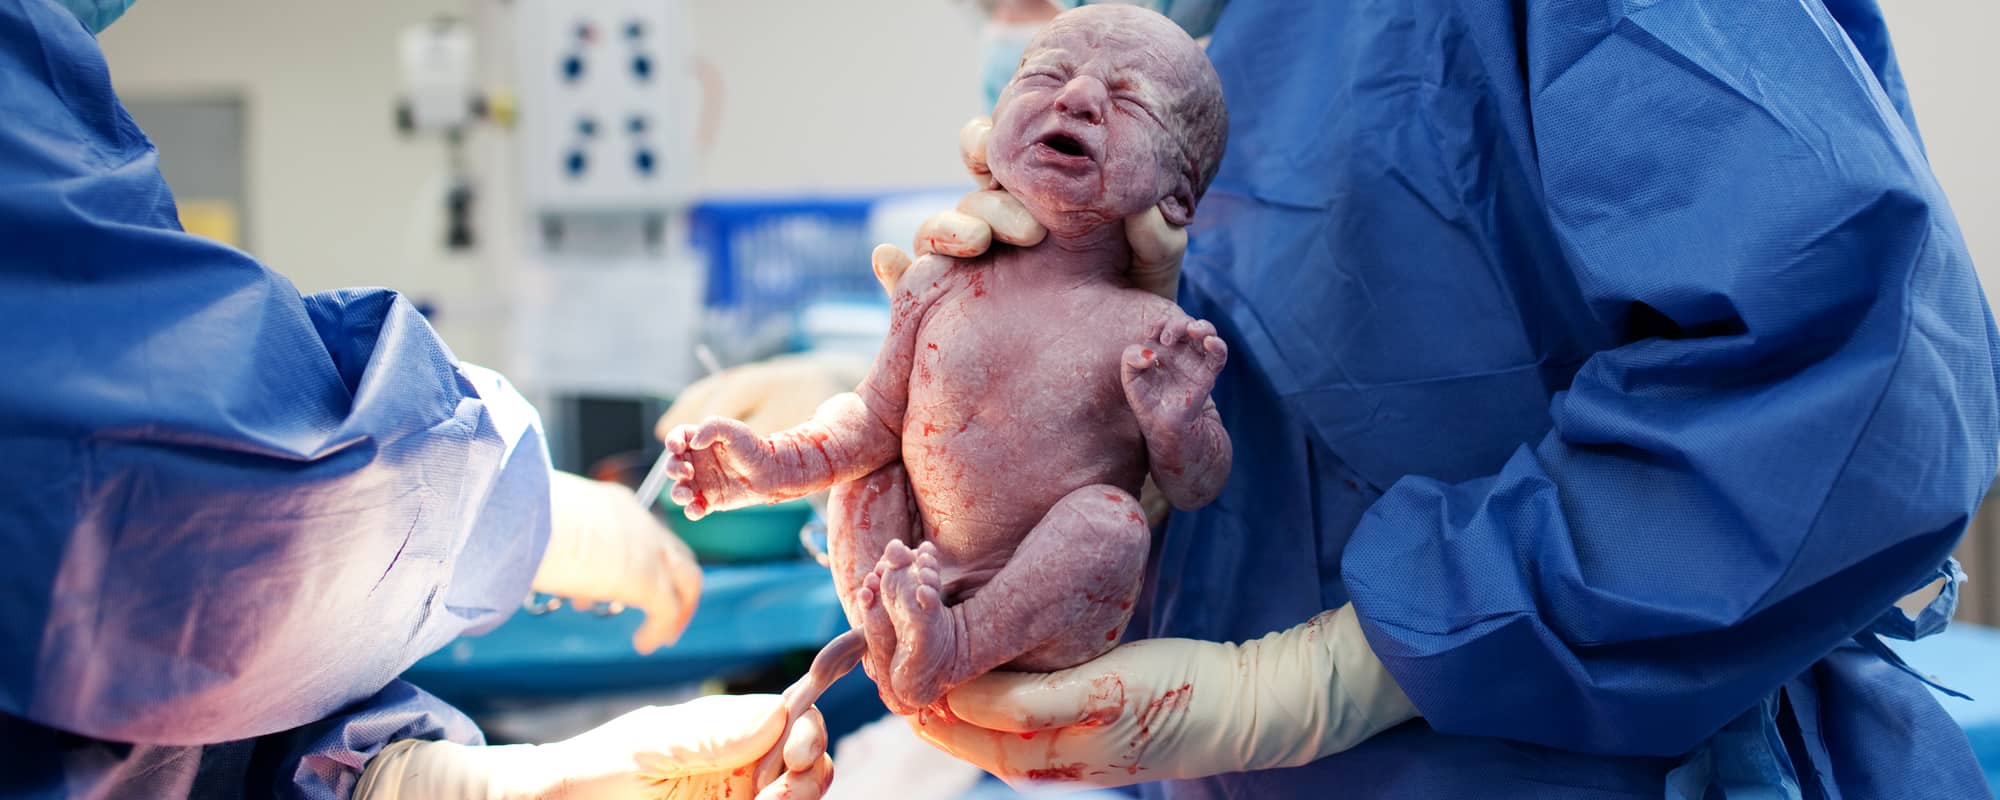 تفسير حلم الولادة القيصرية للعزباء - موسوعة